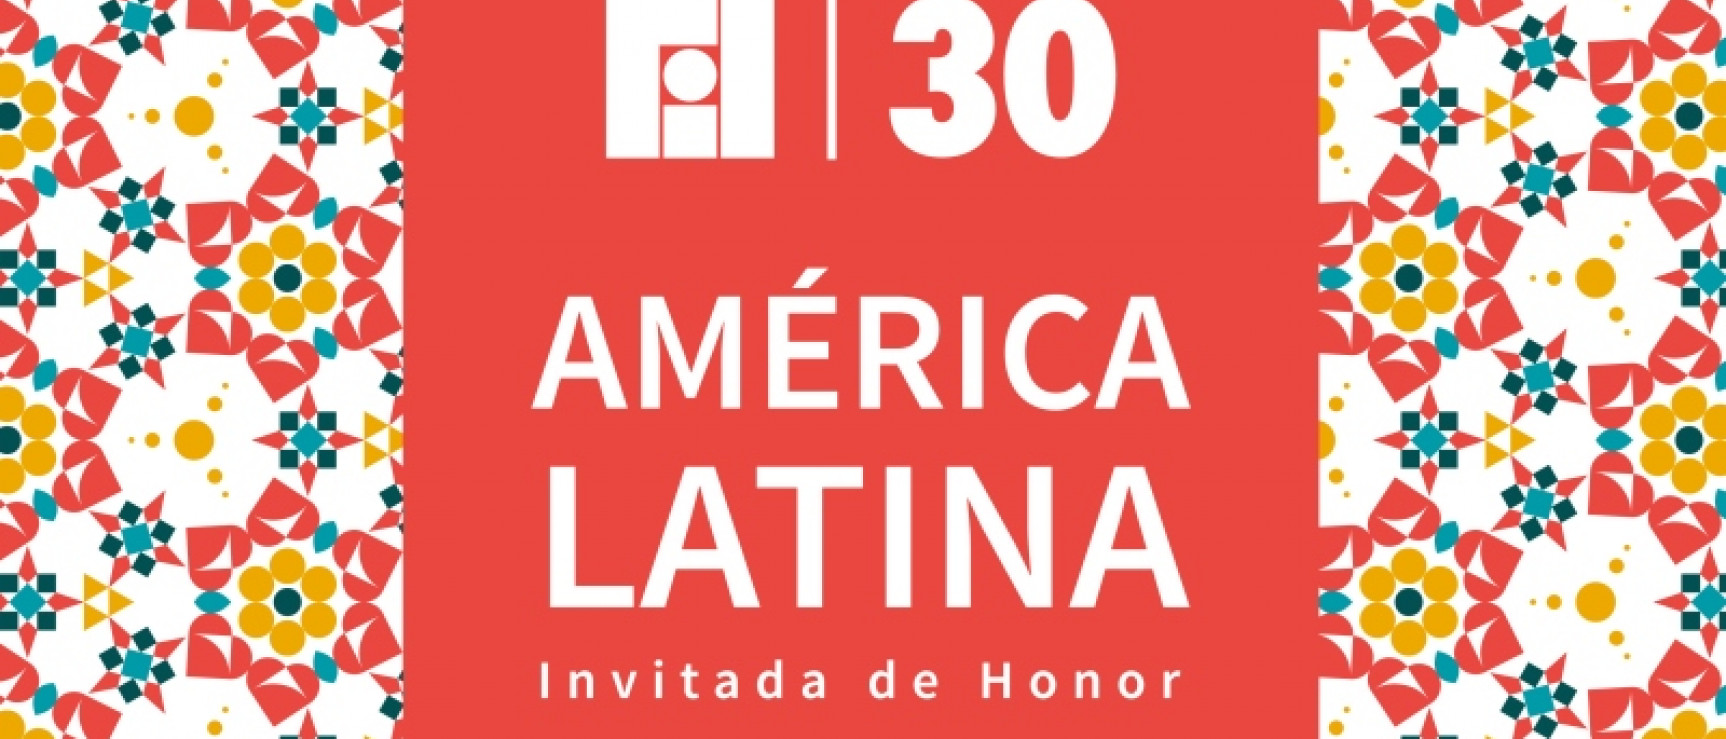 Cartel de la FIL 2016. América Latina, invitada de honor.